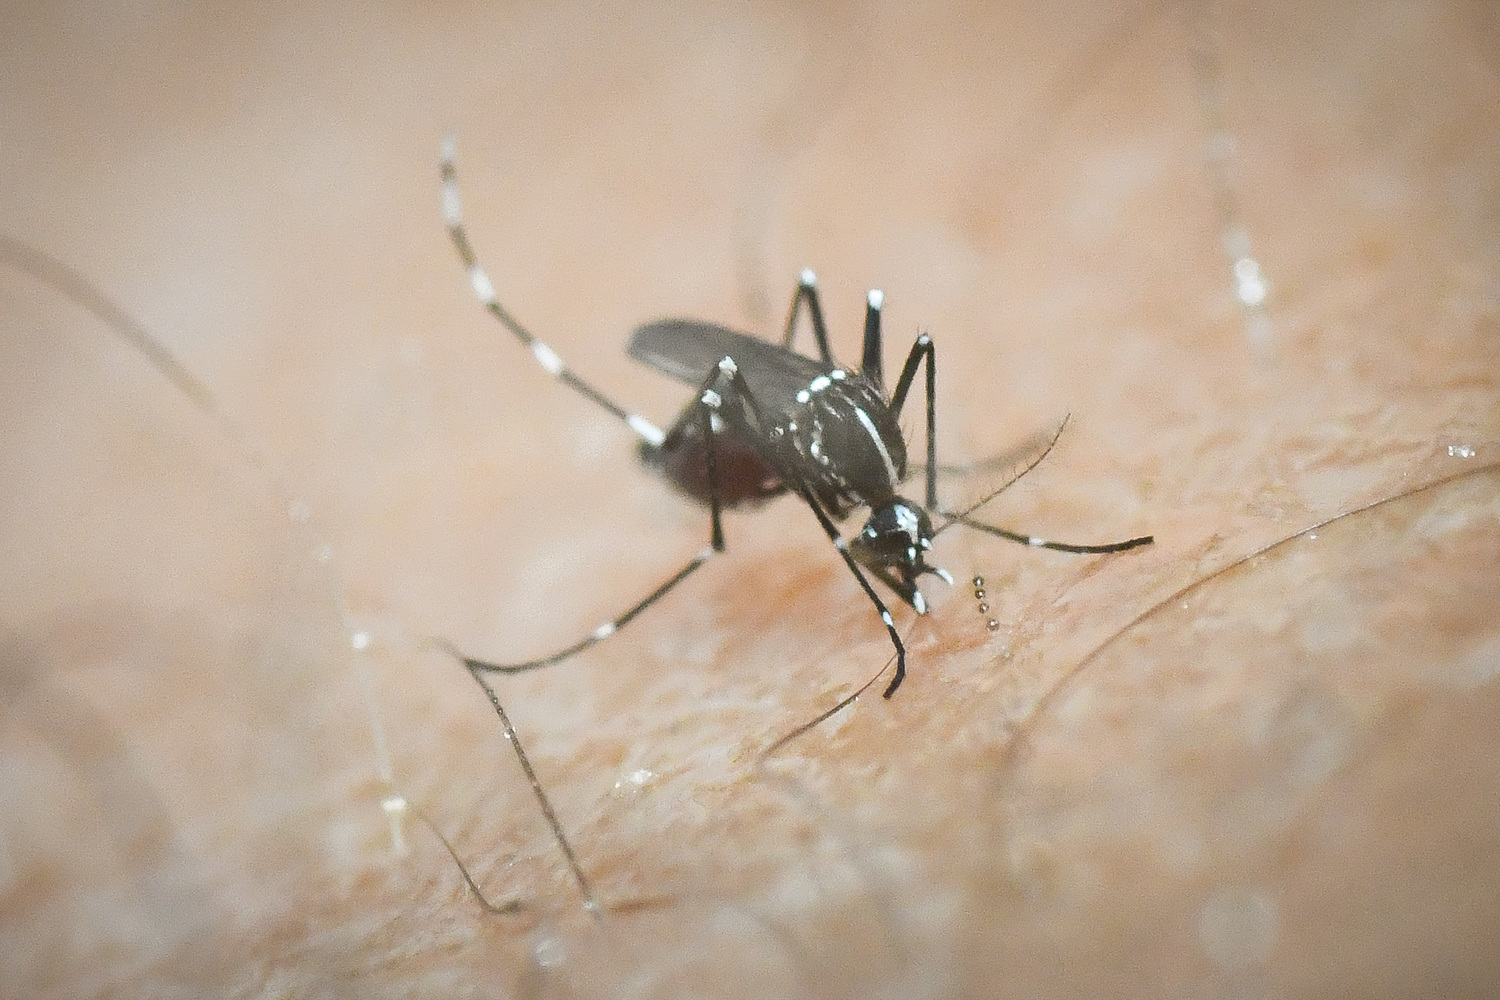 Ευρώπη: Ασθένειες που μεταδίδονται από κουνούπια έχει φέρει η κλιματική αλλαγή